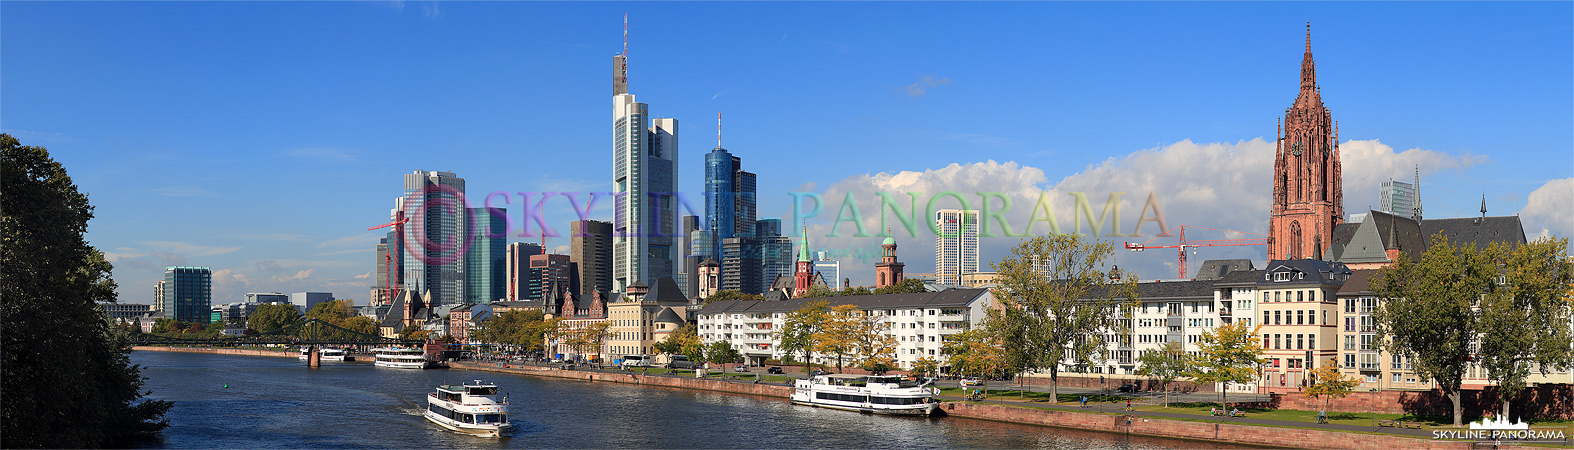 Panorama Bild - Der Blick von der Alten Brücke auf die Skyline der Bankenstadt Frankfurt mit den alles überragenden Hochhäusern im Zentrum und dem Frankfurter Dom am rechten Bildrand. Das Panorama entstand an einem schönen Spätsommertag im September 2012.